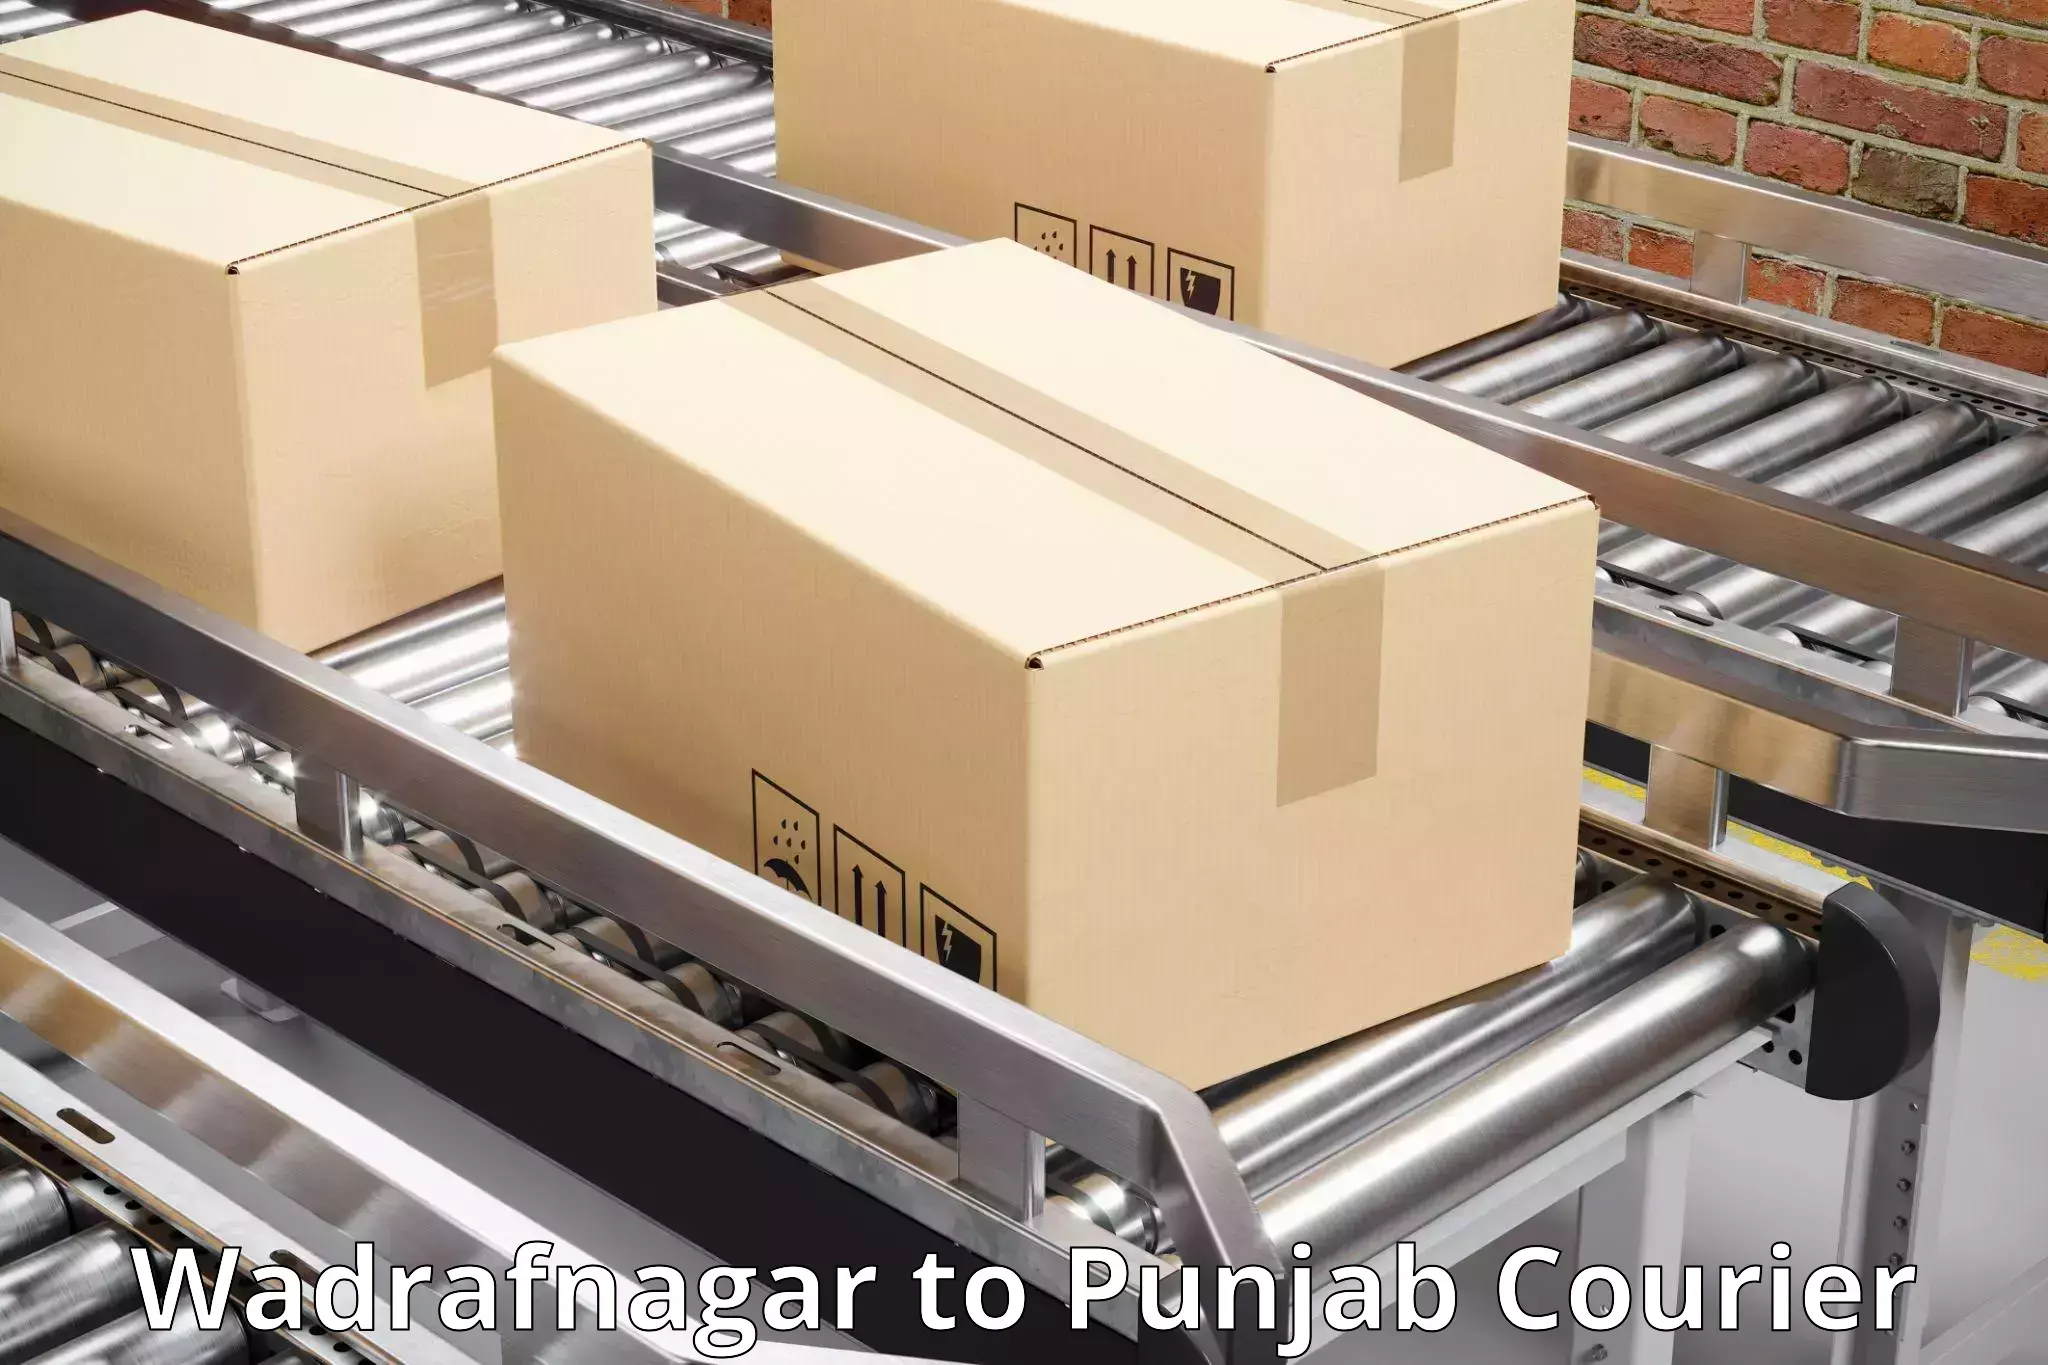 Premium delivery services Wadrafnagar to Abohar